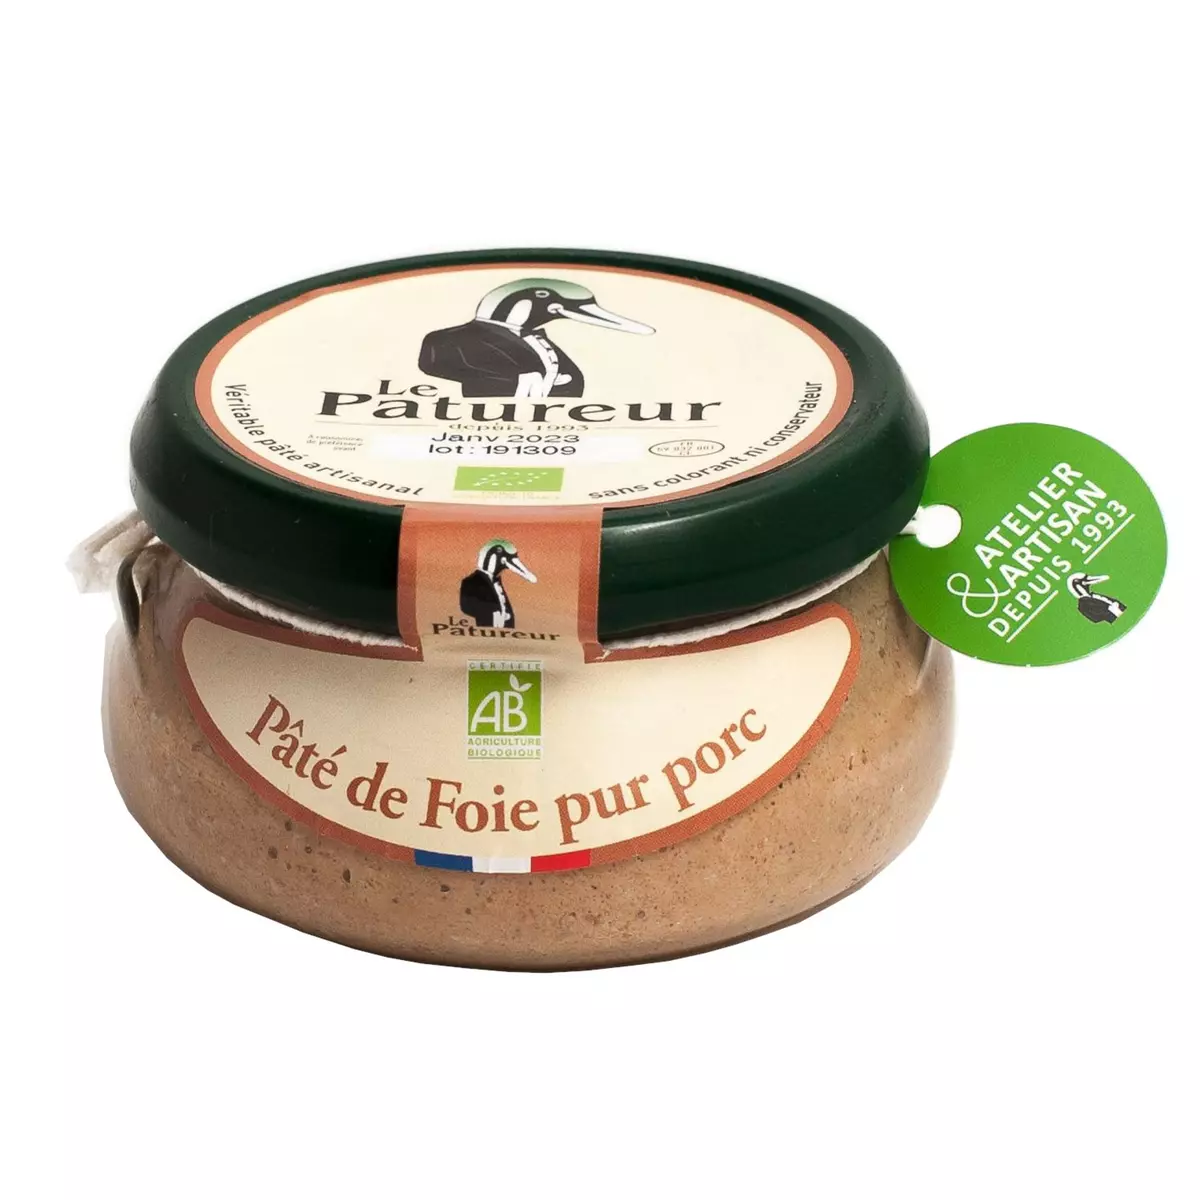 LE PATUREUR Pâté de foie bio pur porc 150g